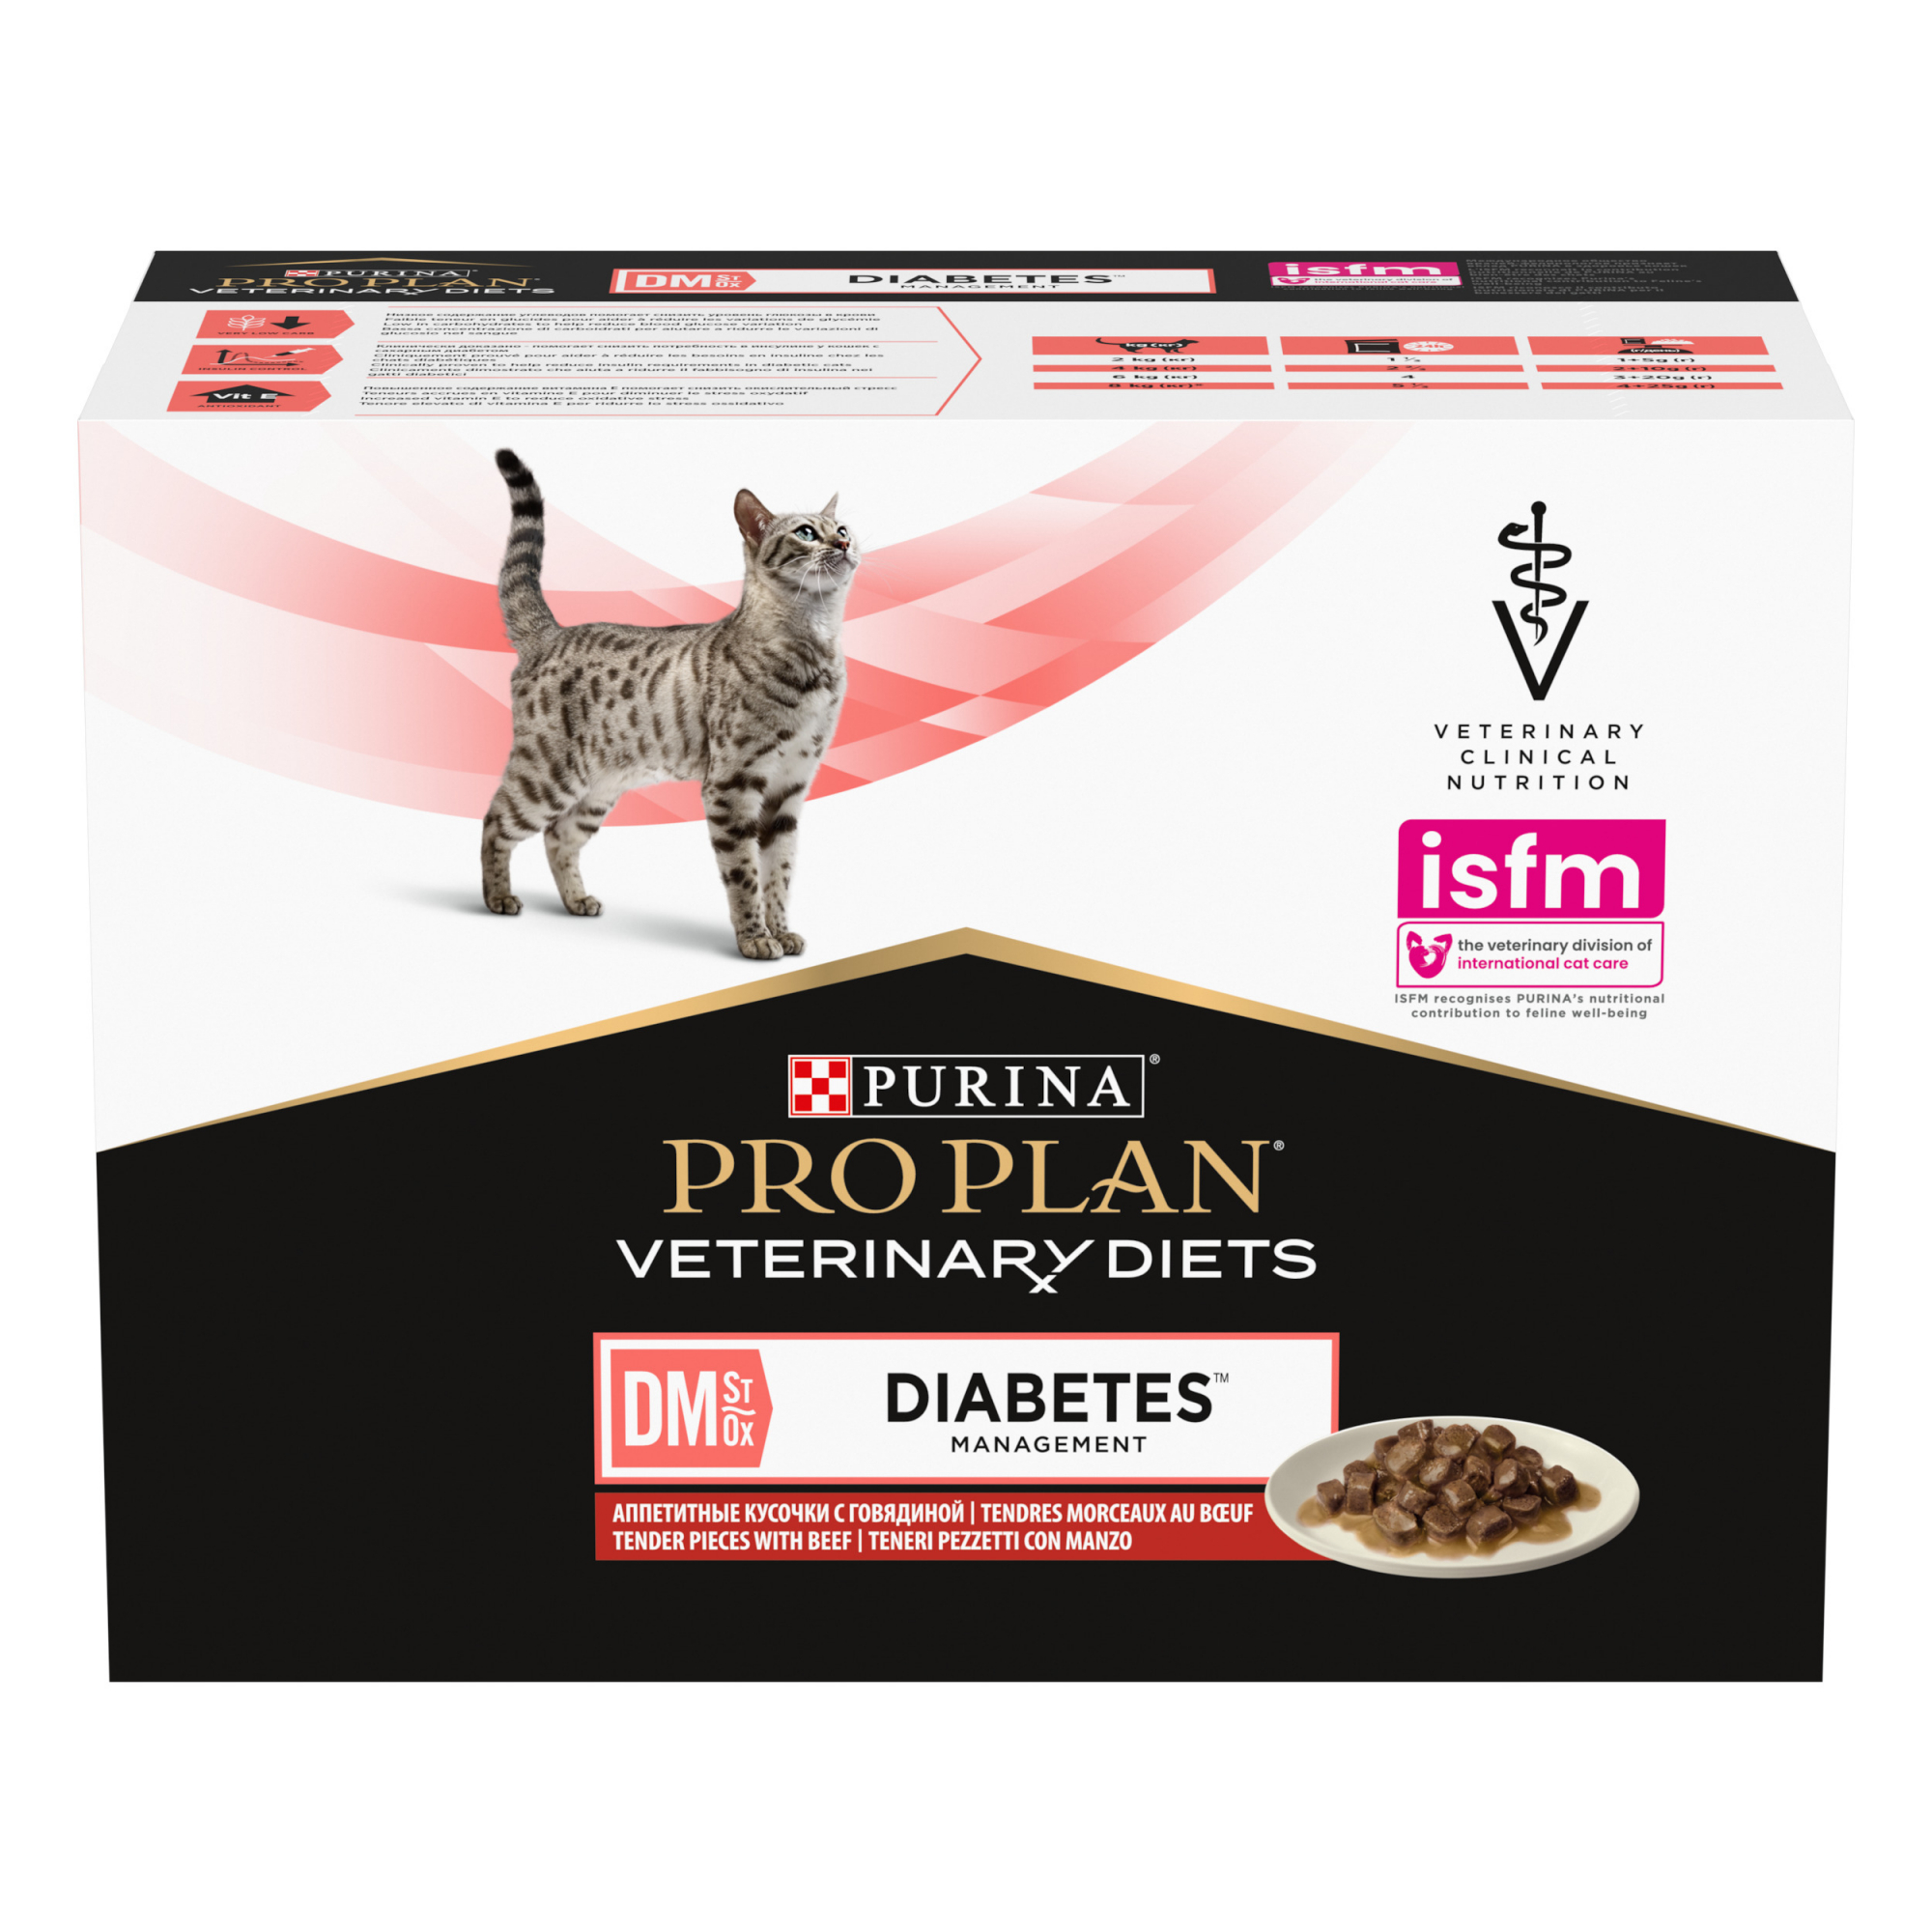 Pack de 10 sobres PRO PLAN Veterinary Diets Feline DM Diabetes Management para gatos